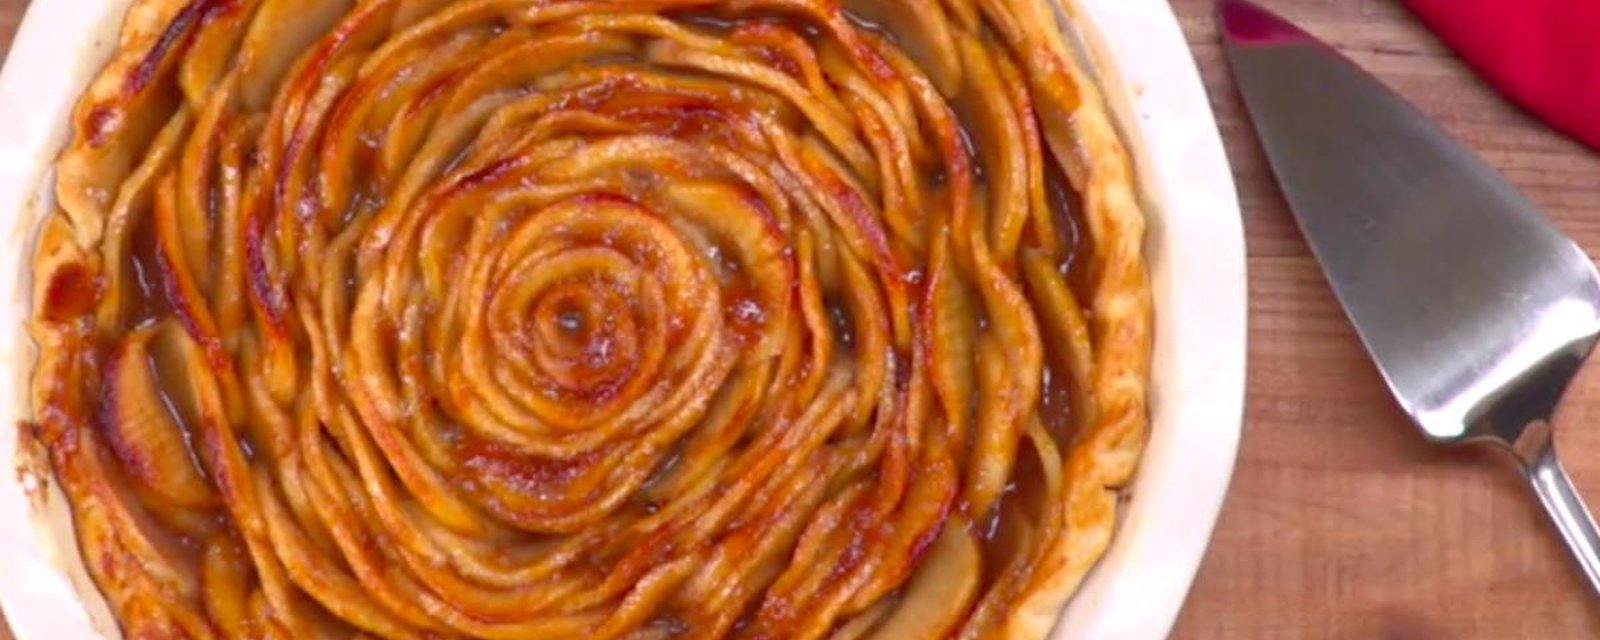 Spectaculaire! Une tarte aux pommes en forme de rose!